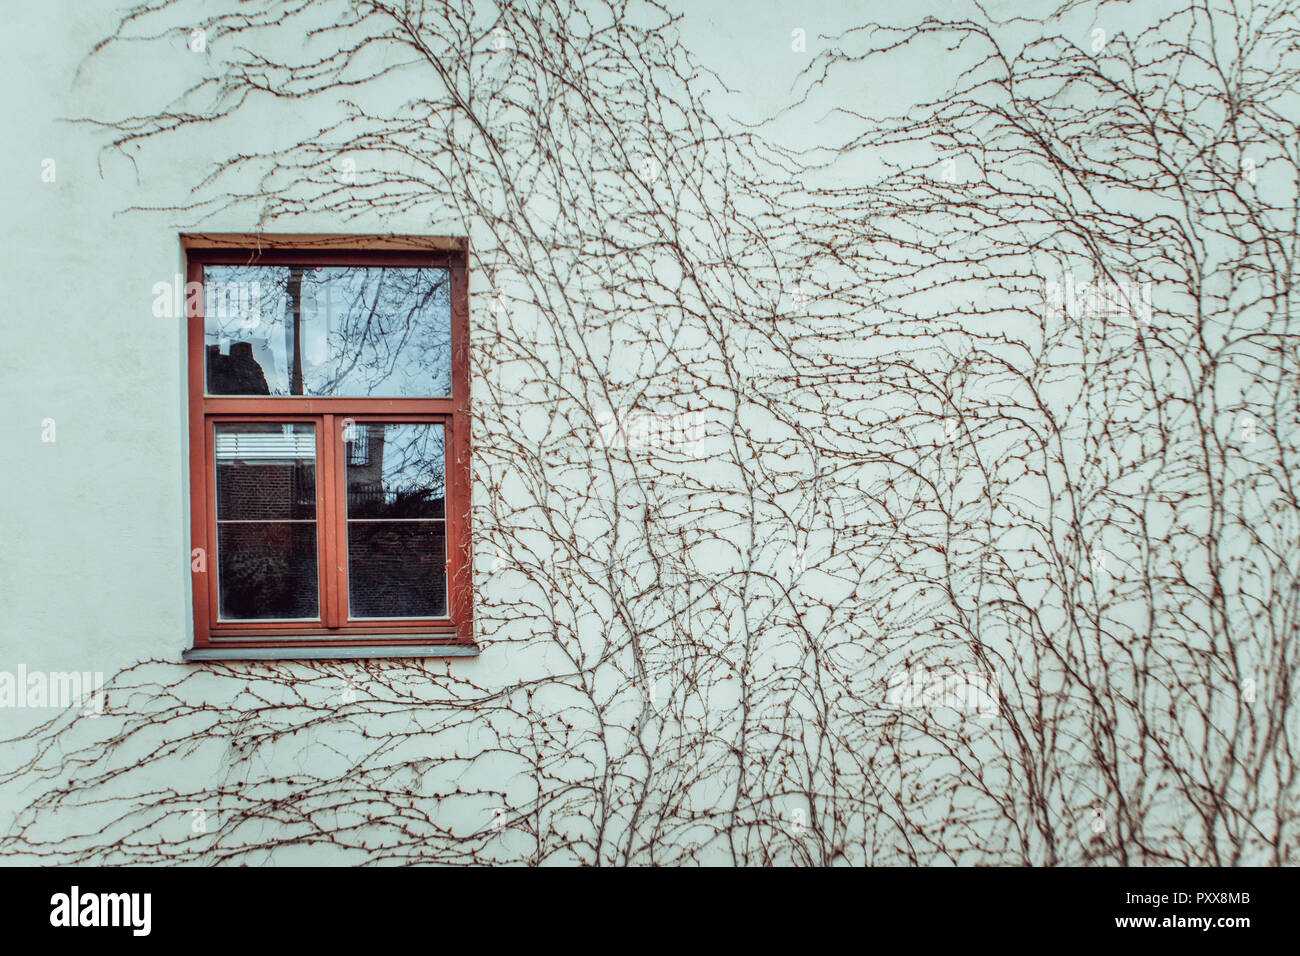 An der Wand Fenster. Pflanzen an der Wand Stockfotografie - Alamy